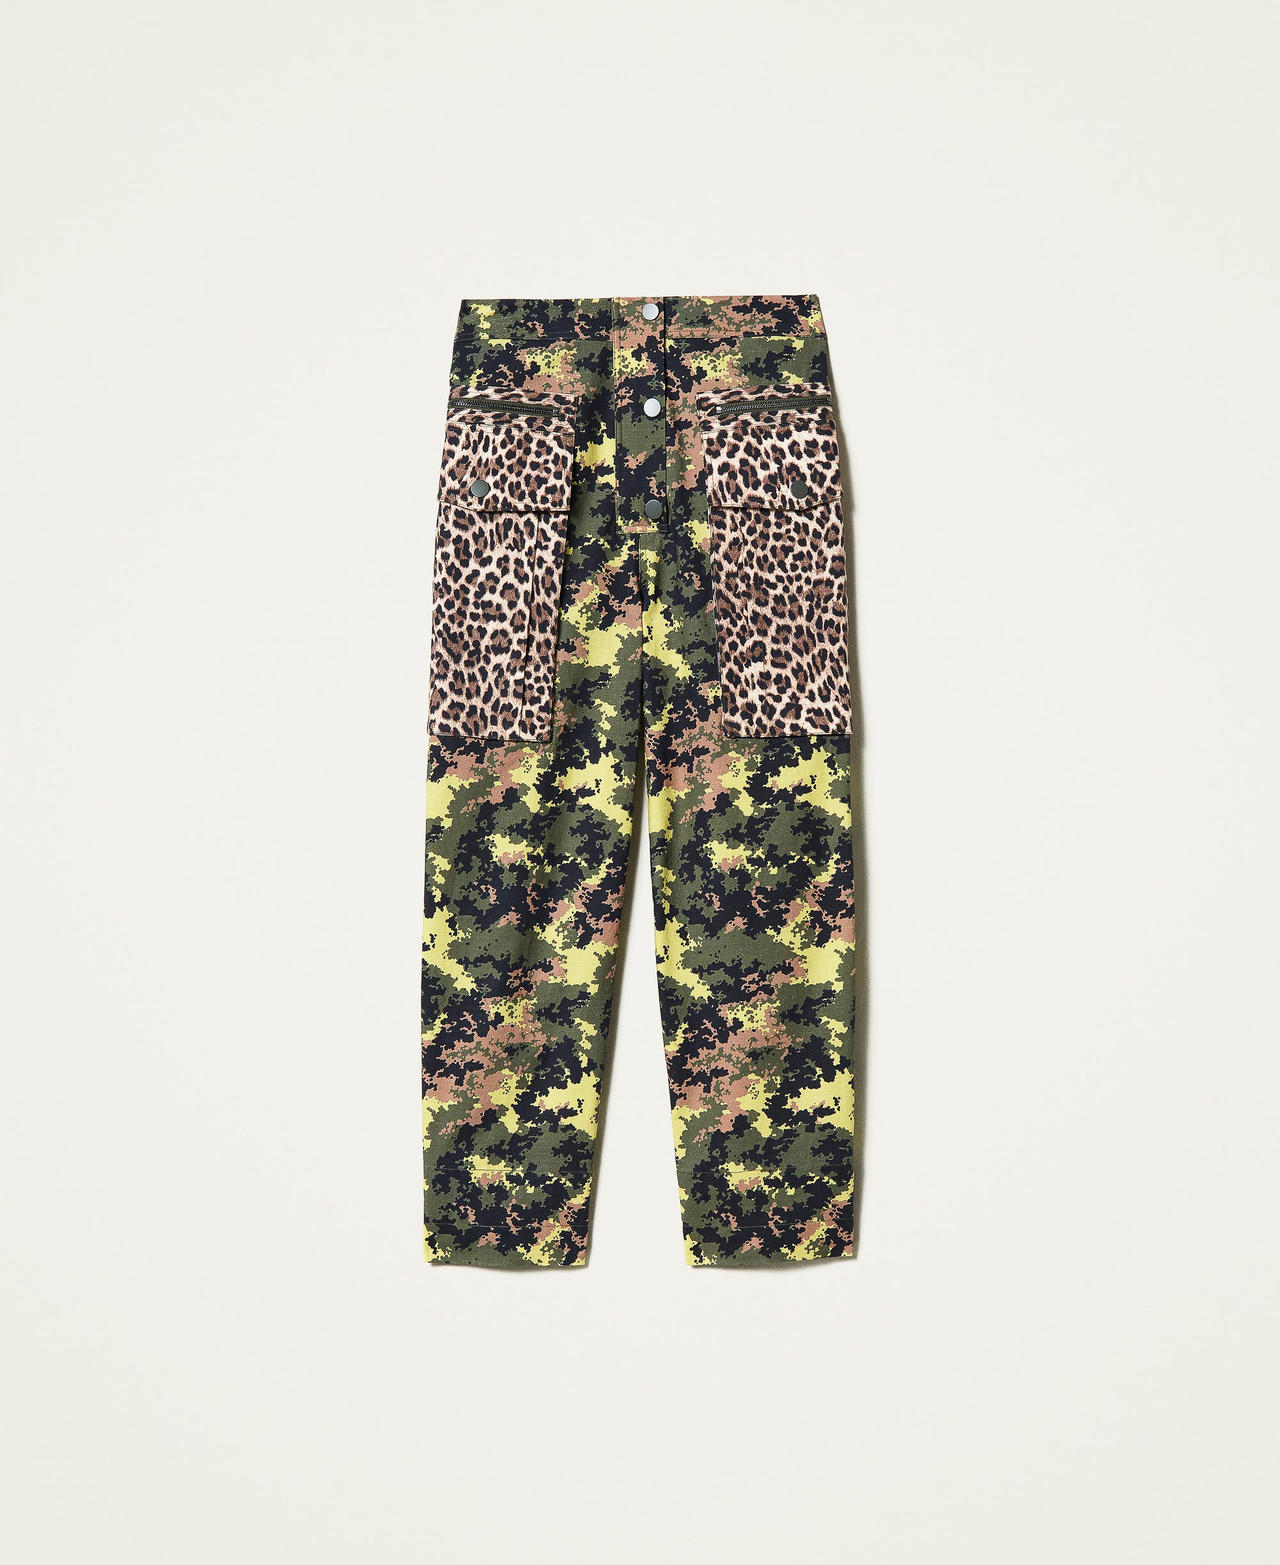 Pantalón cargo con mezcla de estampados Estampado Mimetic Green / Leopardo Mujer 212AP2521-0S